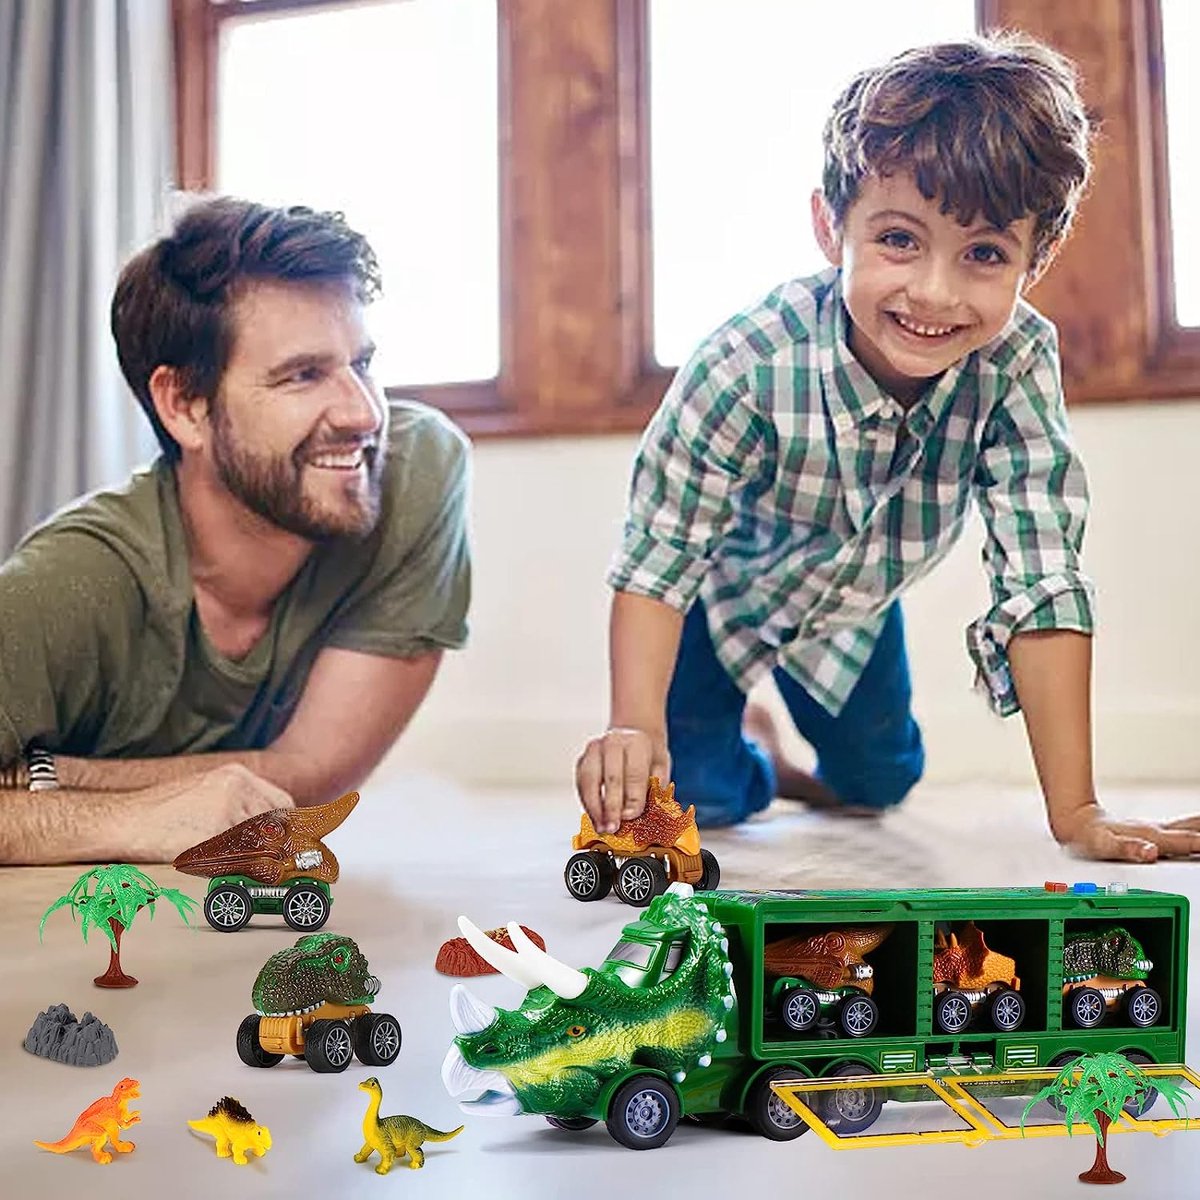 Dinosaurus Truck - speelgoed dinosaure, voiture enfants avec 3 mini  voitures